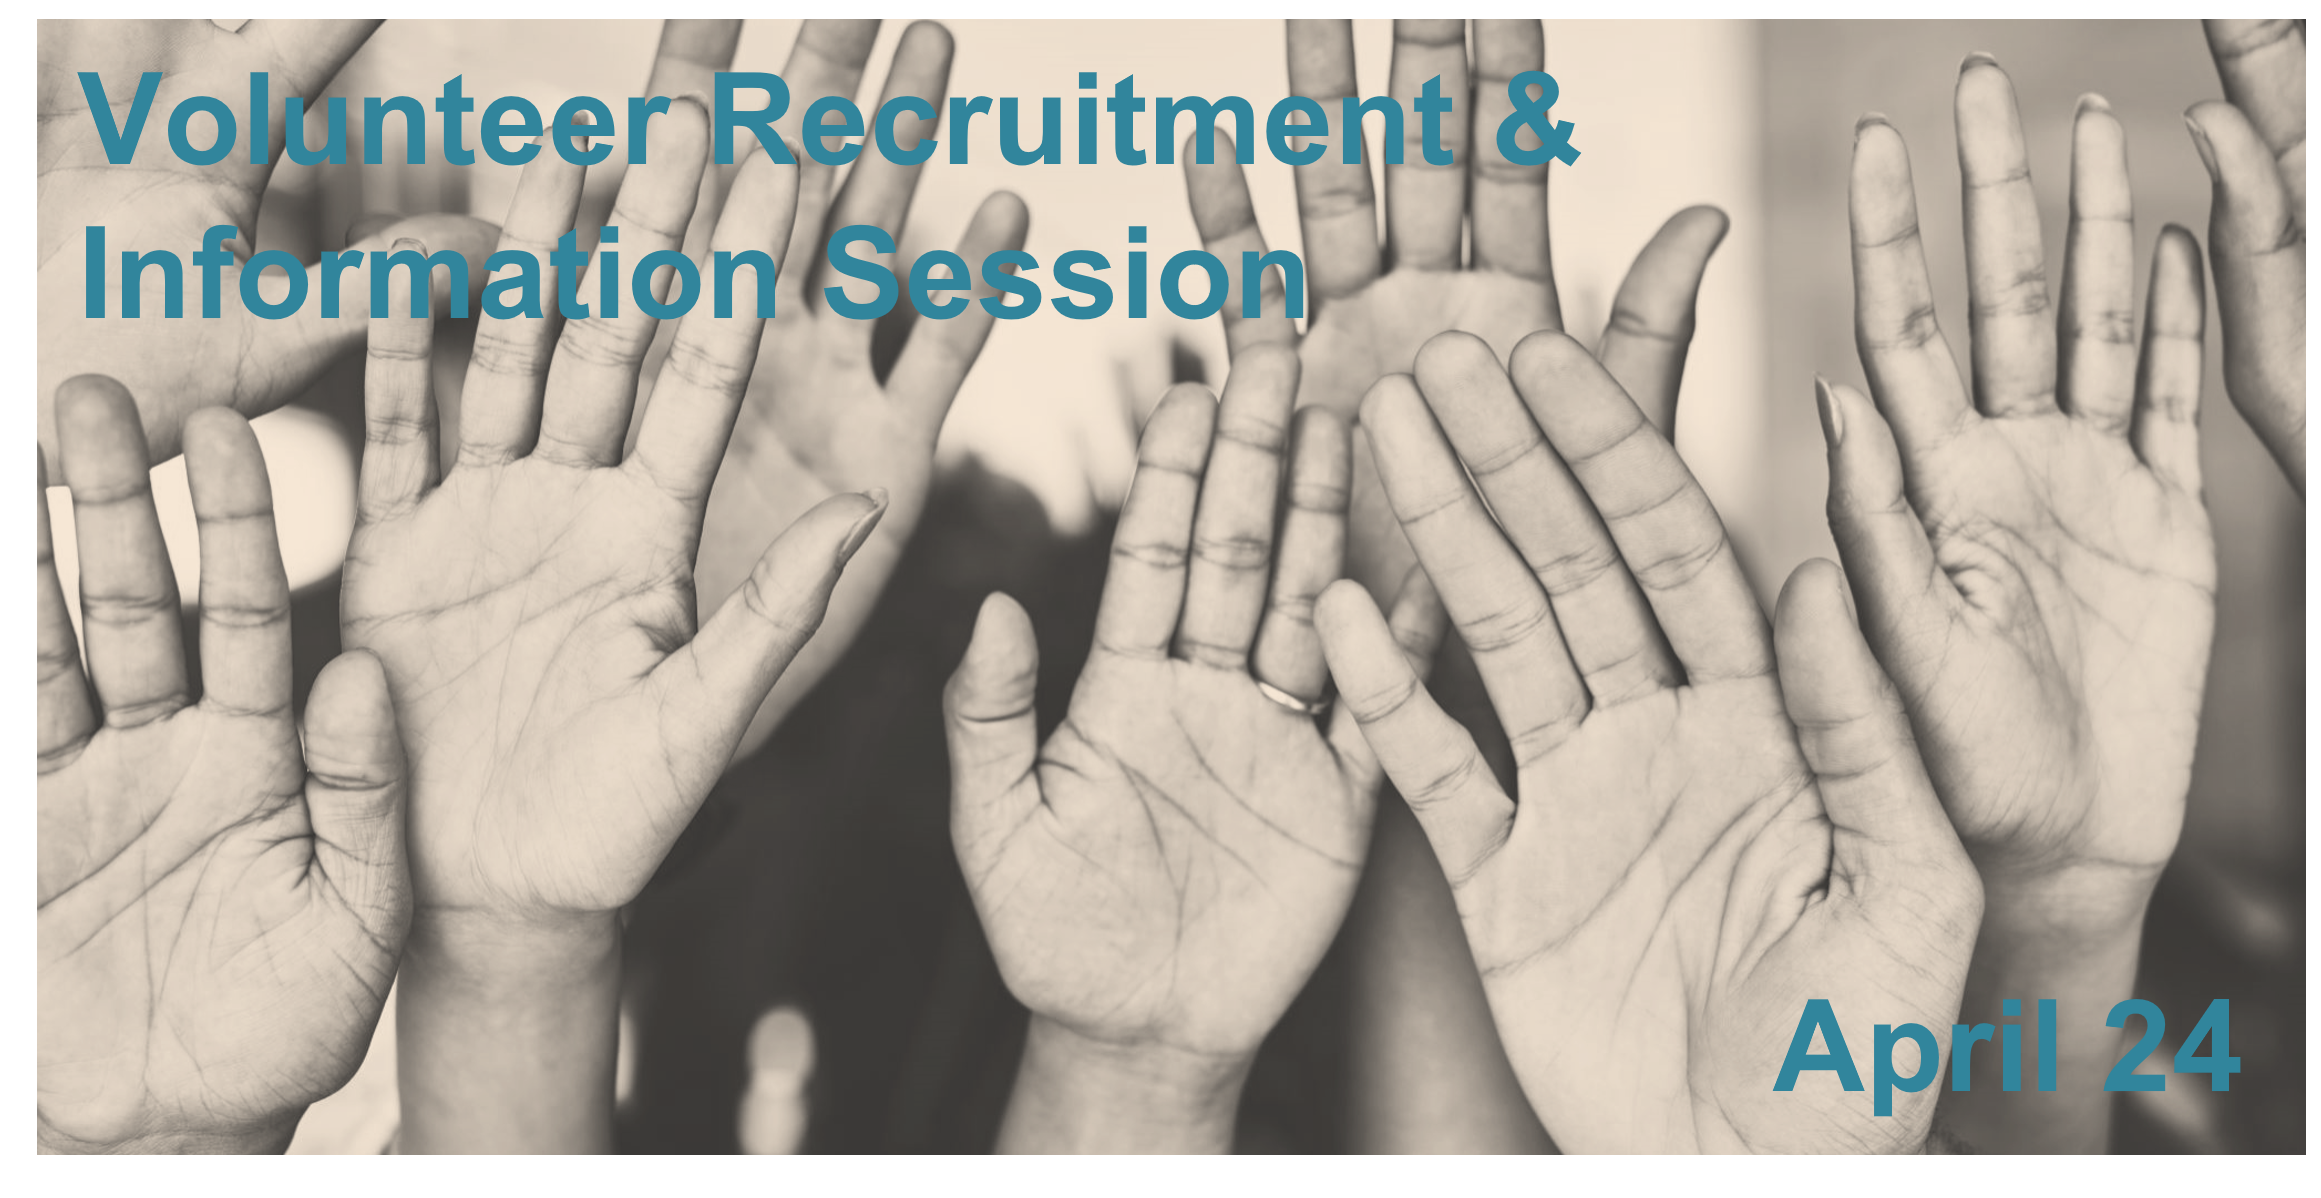 VolunteerRecruitment